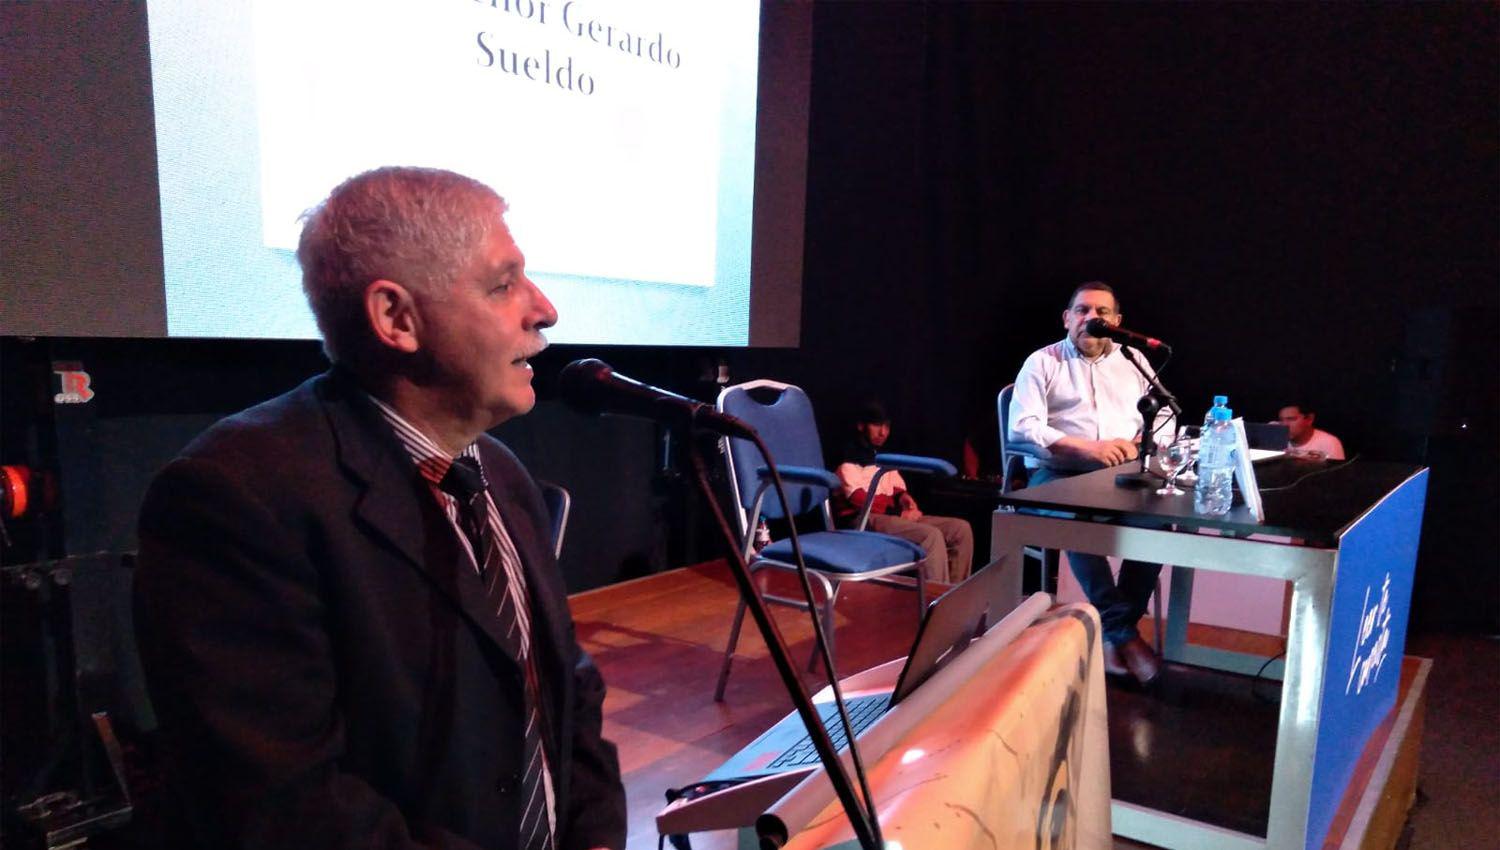 VIDEO  Presentaron el libro Monsentildeor Gerardo Sueldo profeta maacutertir derechos humanos